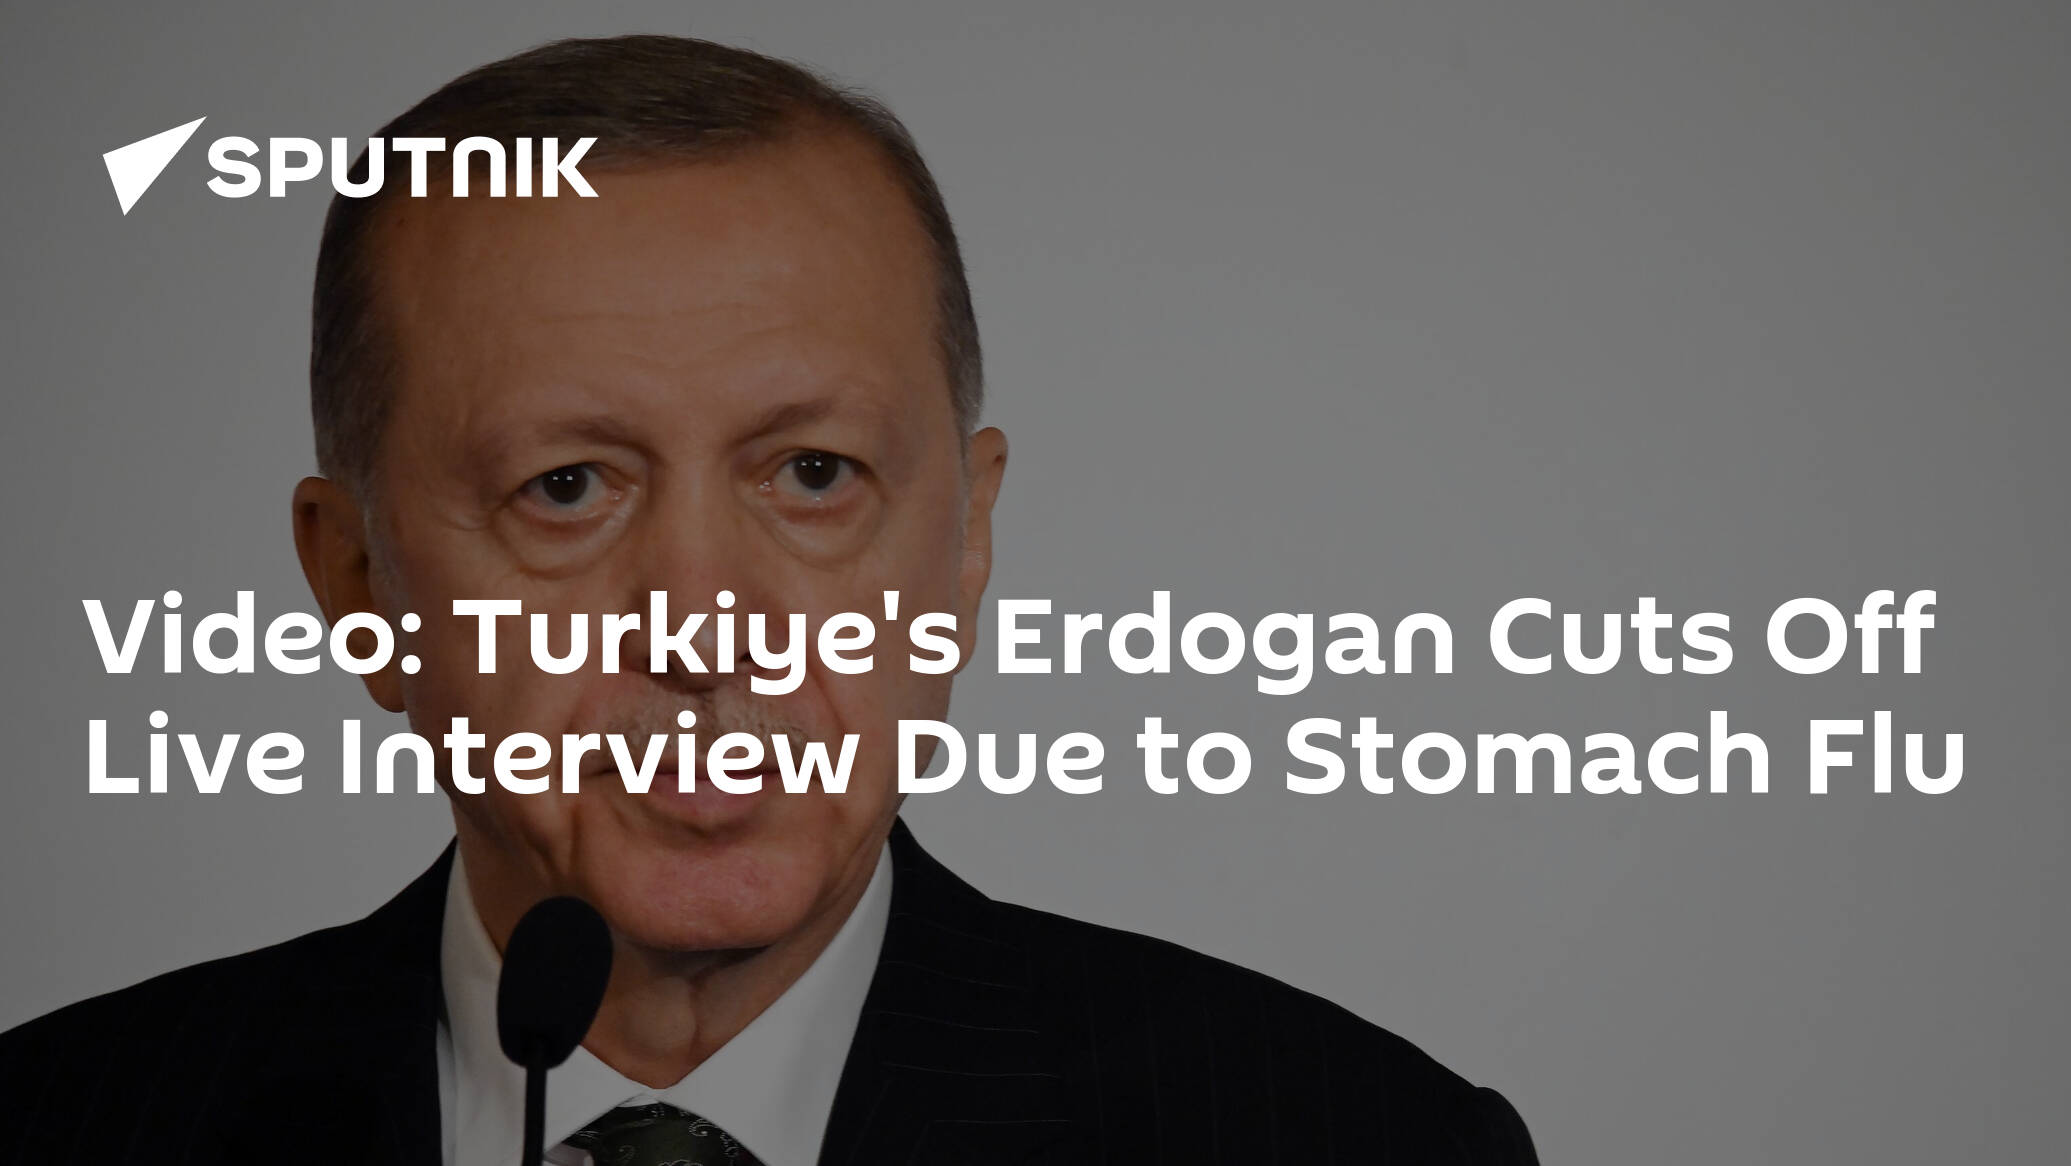 Video: Turkiye's Erdogan Cuts Off Live Interview Due to Stomach Flu